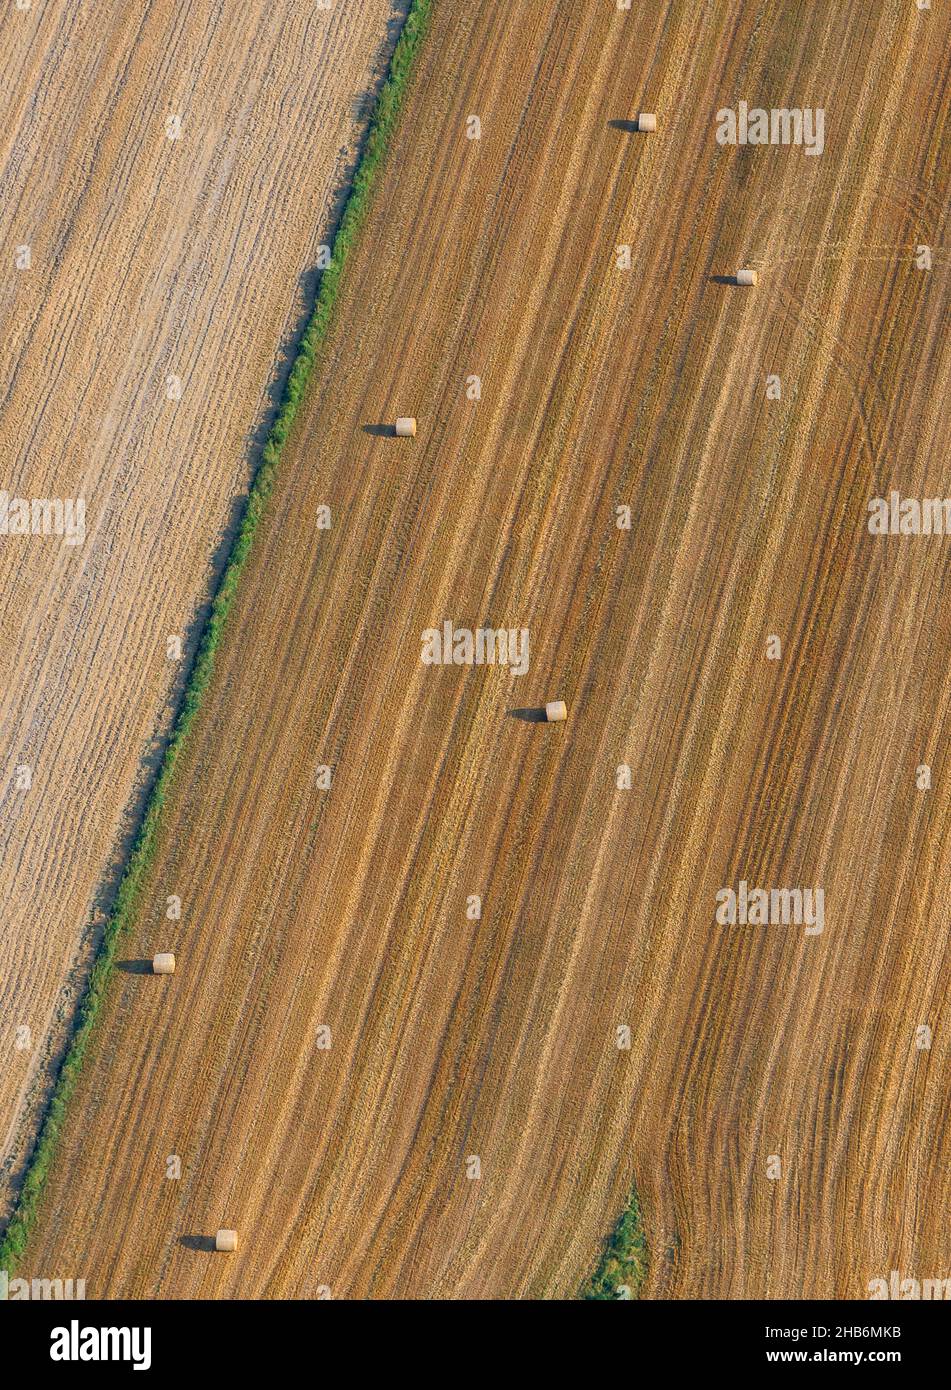 Campo de grano con fardos de paja redonda, vista aérea, Alemania, Schleswig-Holstein Foto de stock